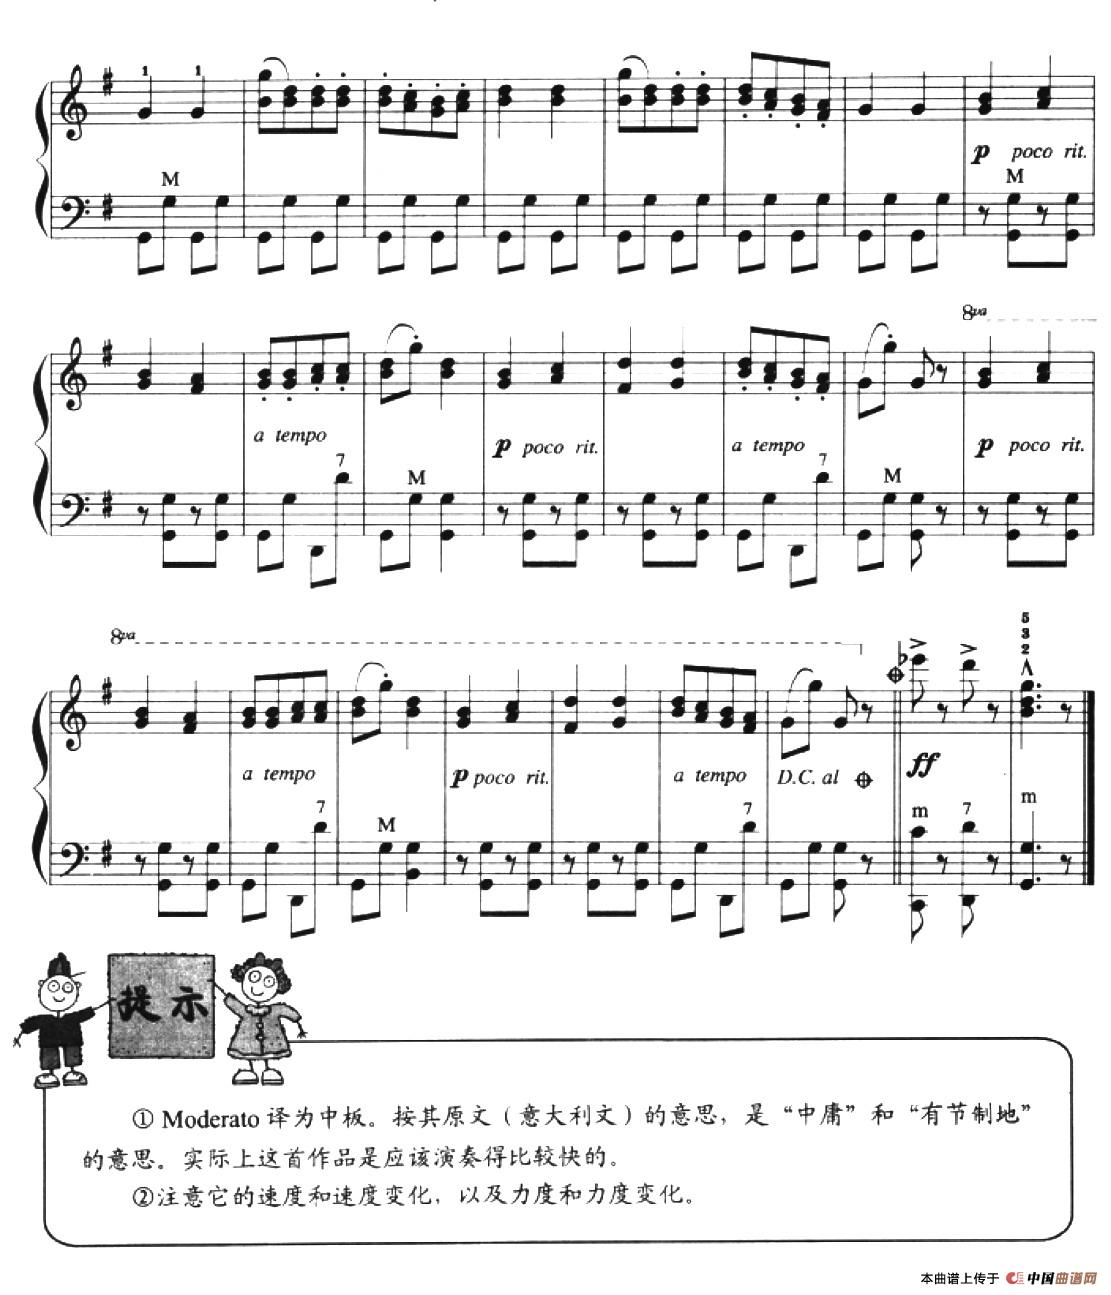 儿童手风琴曲：匈牙利舞曲第五号手风琴谱（线简谱对照、带指法版）